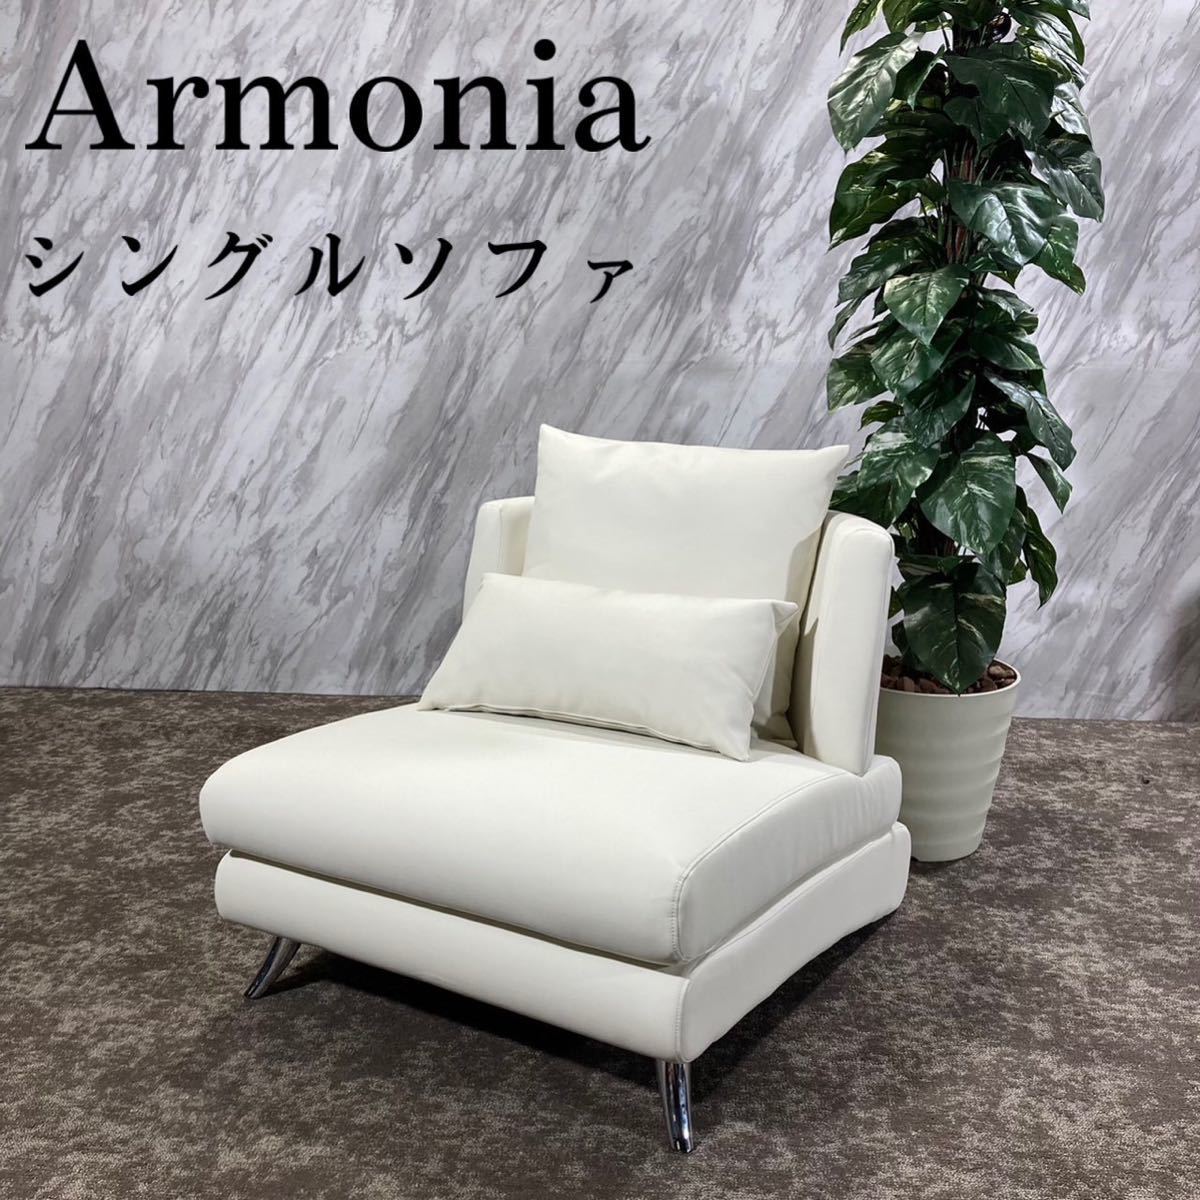 Armonia アルモニア シングルソファ 1Pソファ レザー 家具 D030-